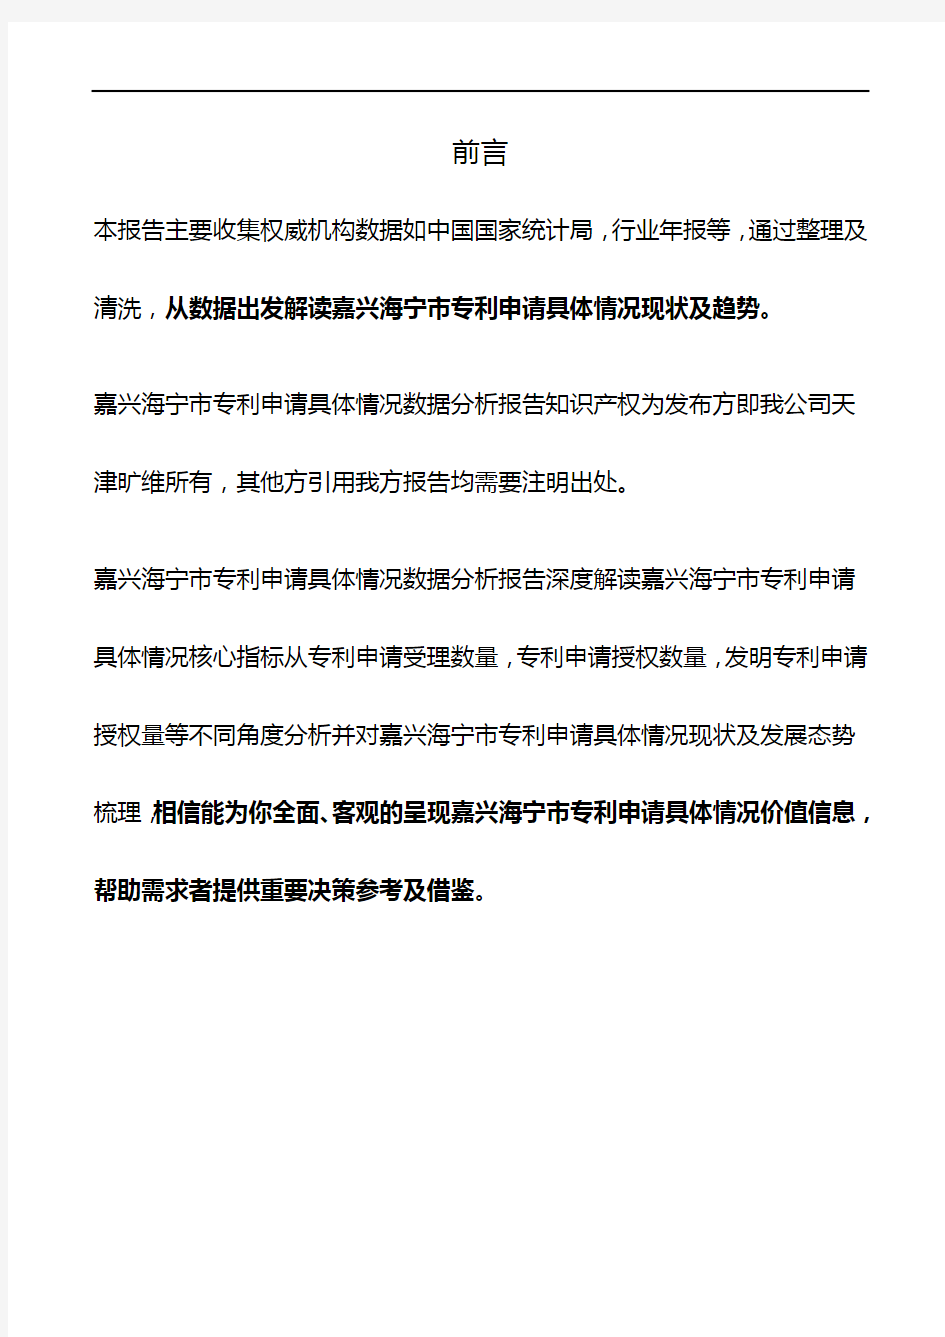 浙江省嘉兴海宁市专利申请具体情况3年数据分析报告2019版